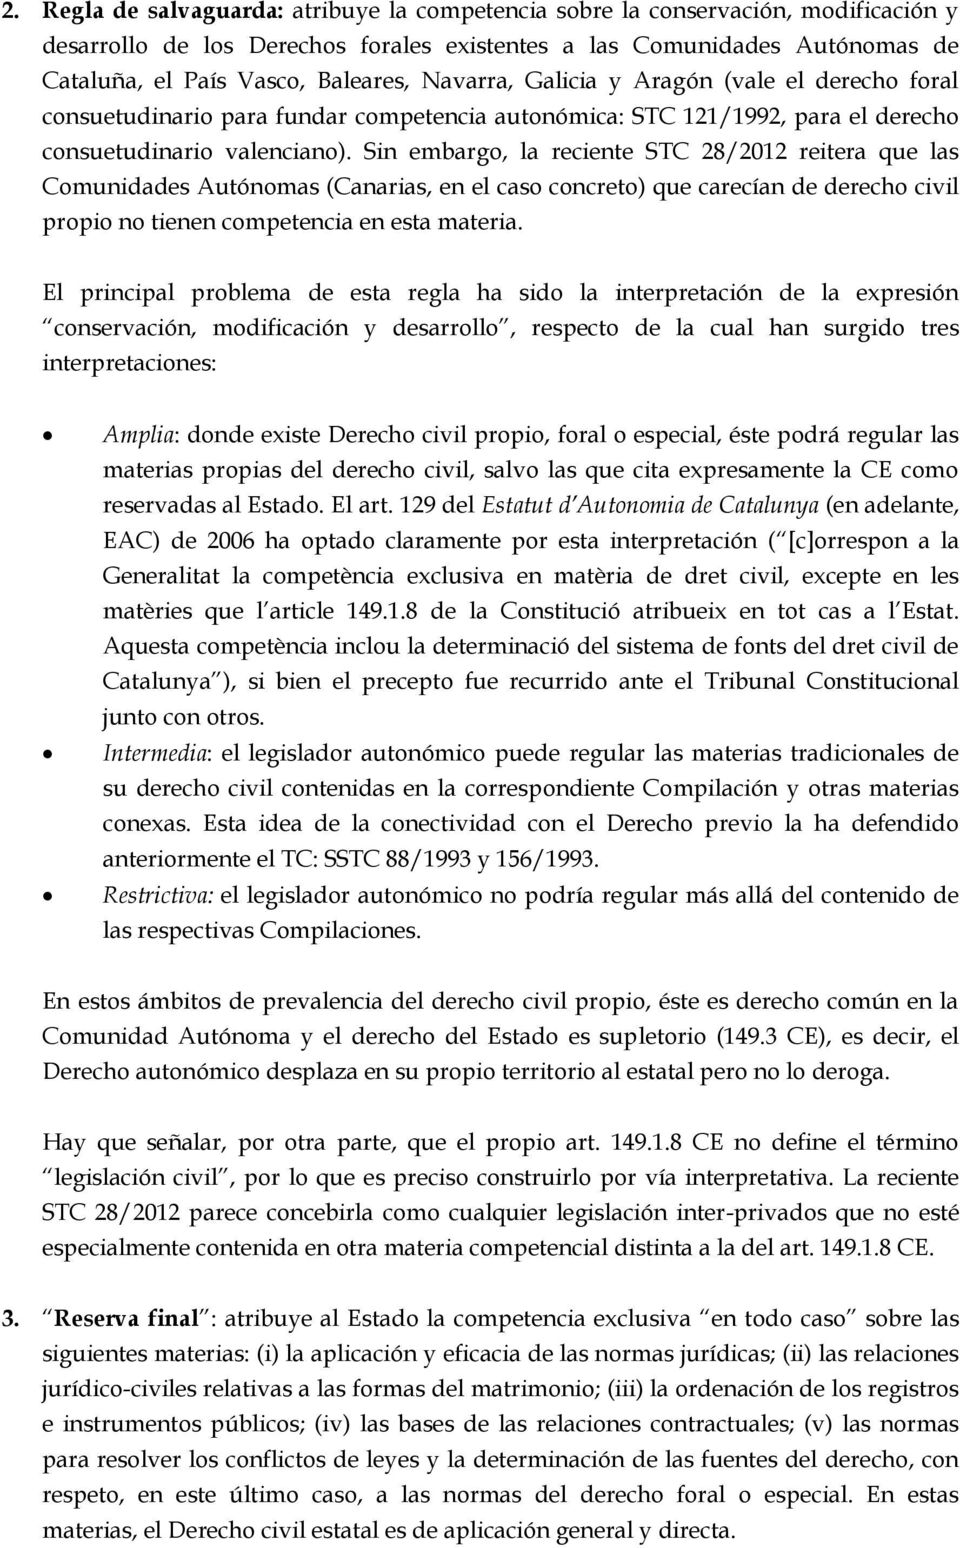 Sin embargo, la reciente STC 28/2012 reitera que las Comunidades Autónomas (Canarias, en el caso concreto) que carecían de derecho civil propio no tienen competencia en esta materia.